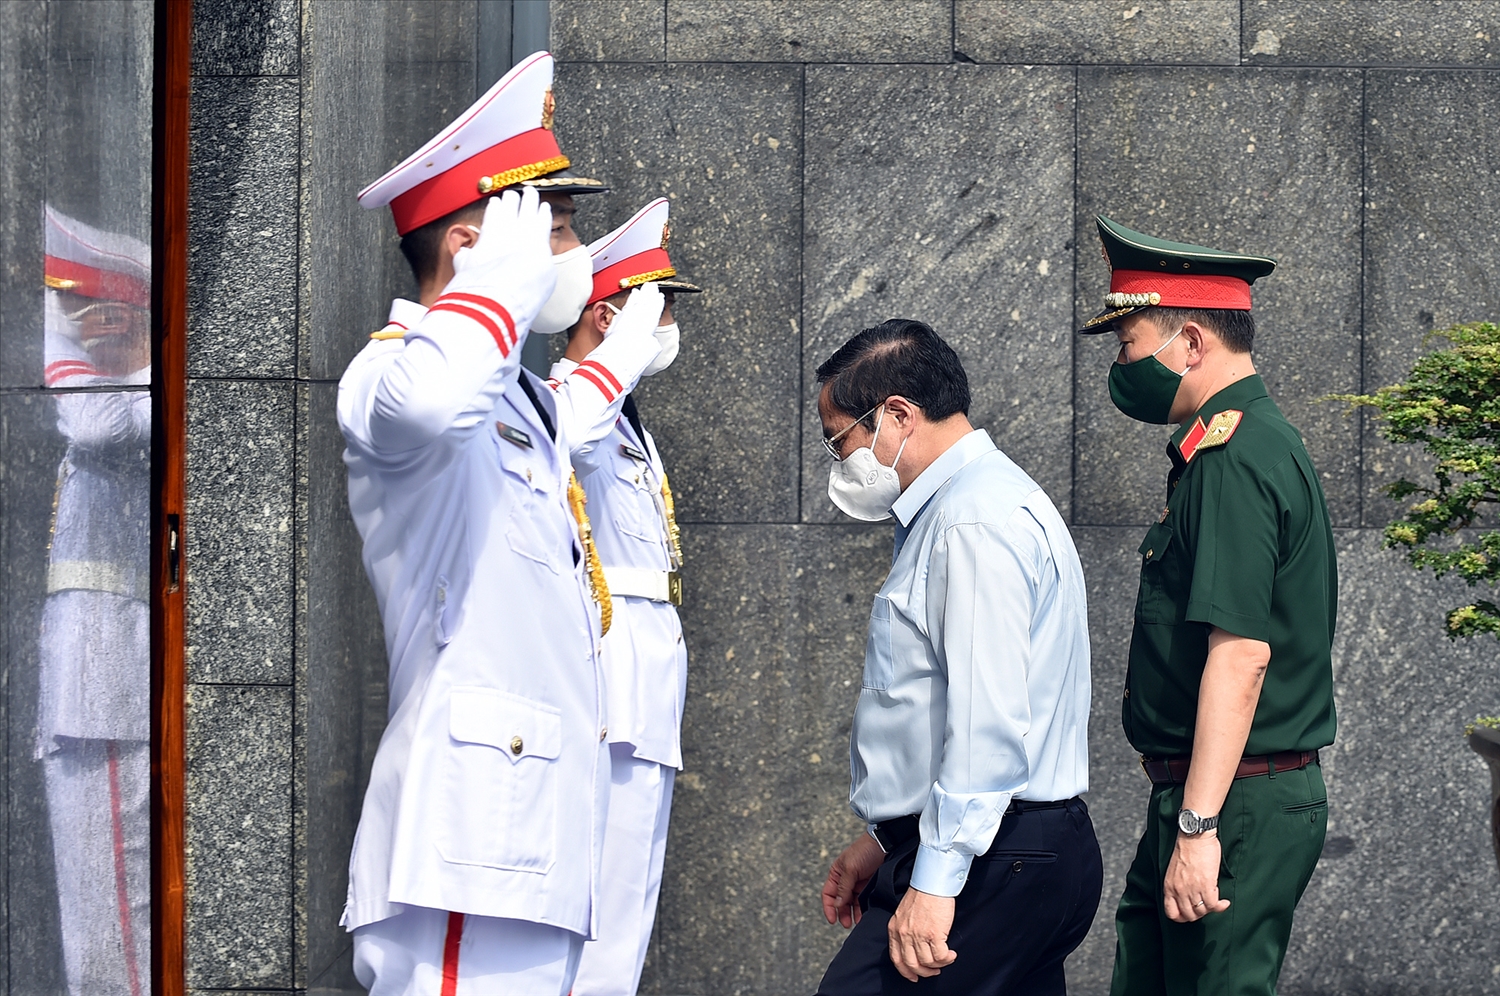 Thủ tướng Phạm Minh Chính vào Lăng viếng Chủ tịch Hồ Chí Minh và kiểm tra công tác giữ gìn, bảo vệ thi hài Chủ tịch Hồ Chí Minh - Ảnh: VGP/Nhật Bắc